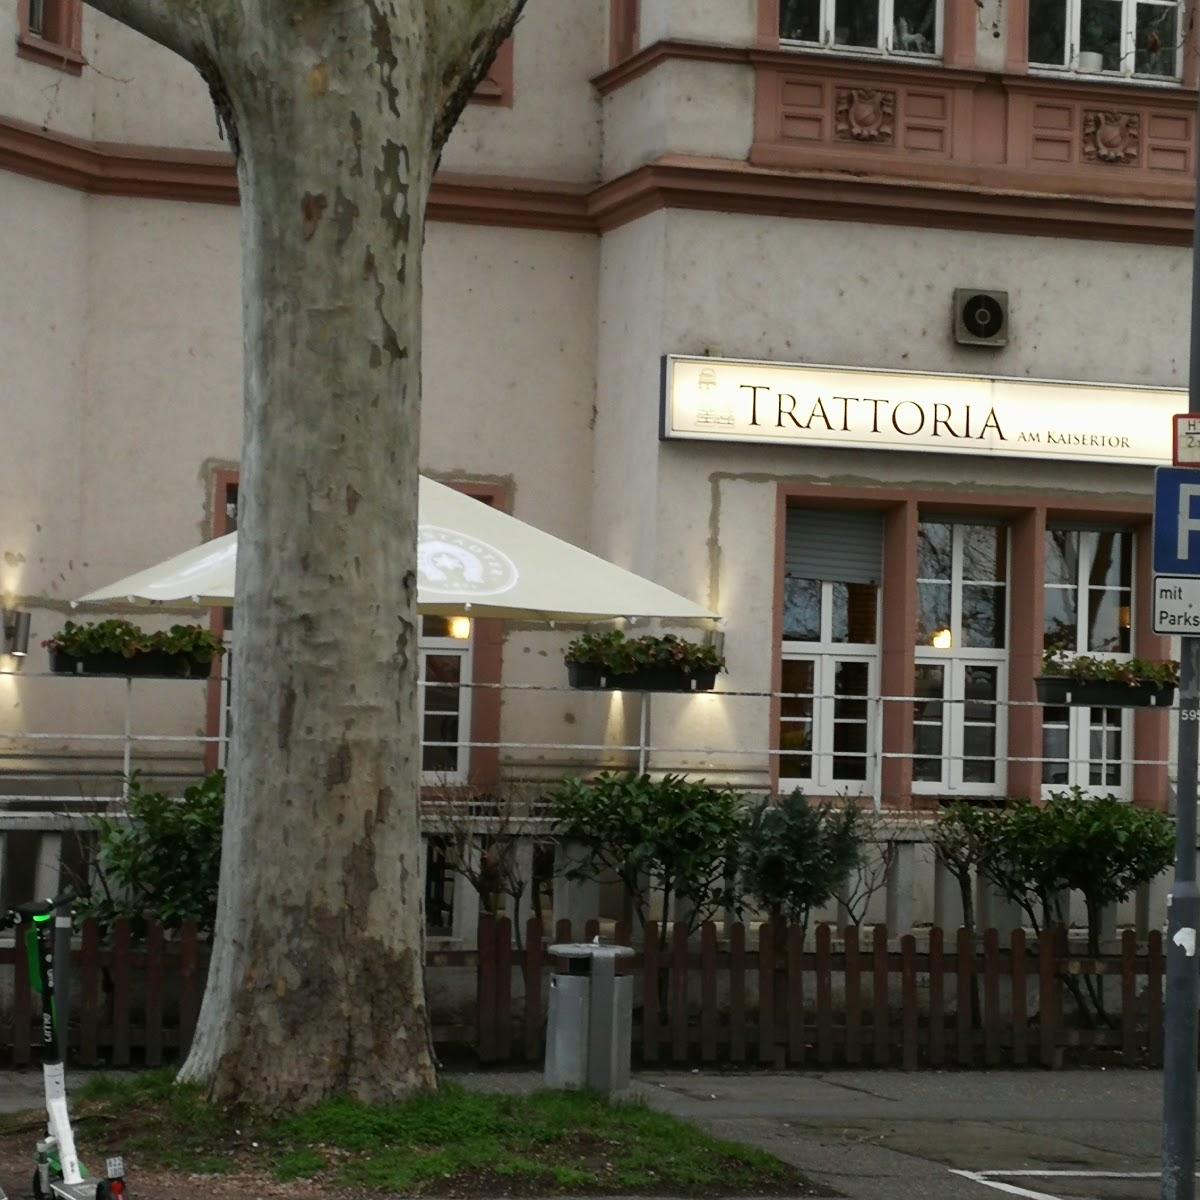 Restaurant "Trattoria am Kaisertor" in Mainz